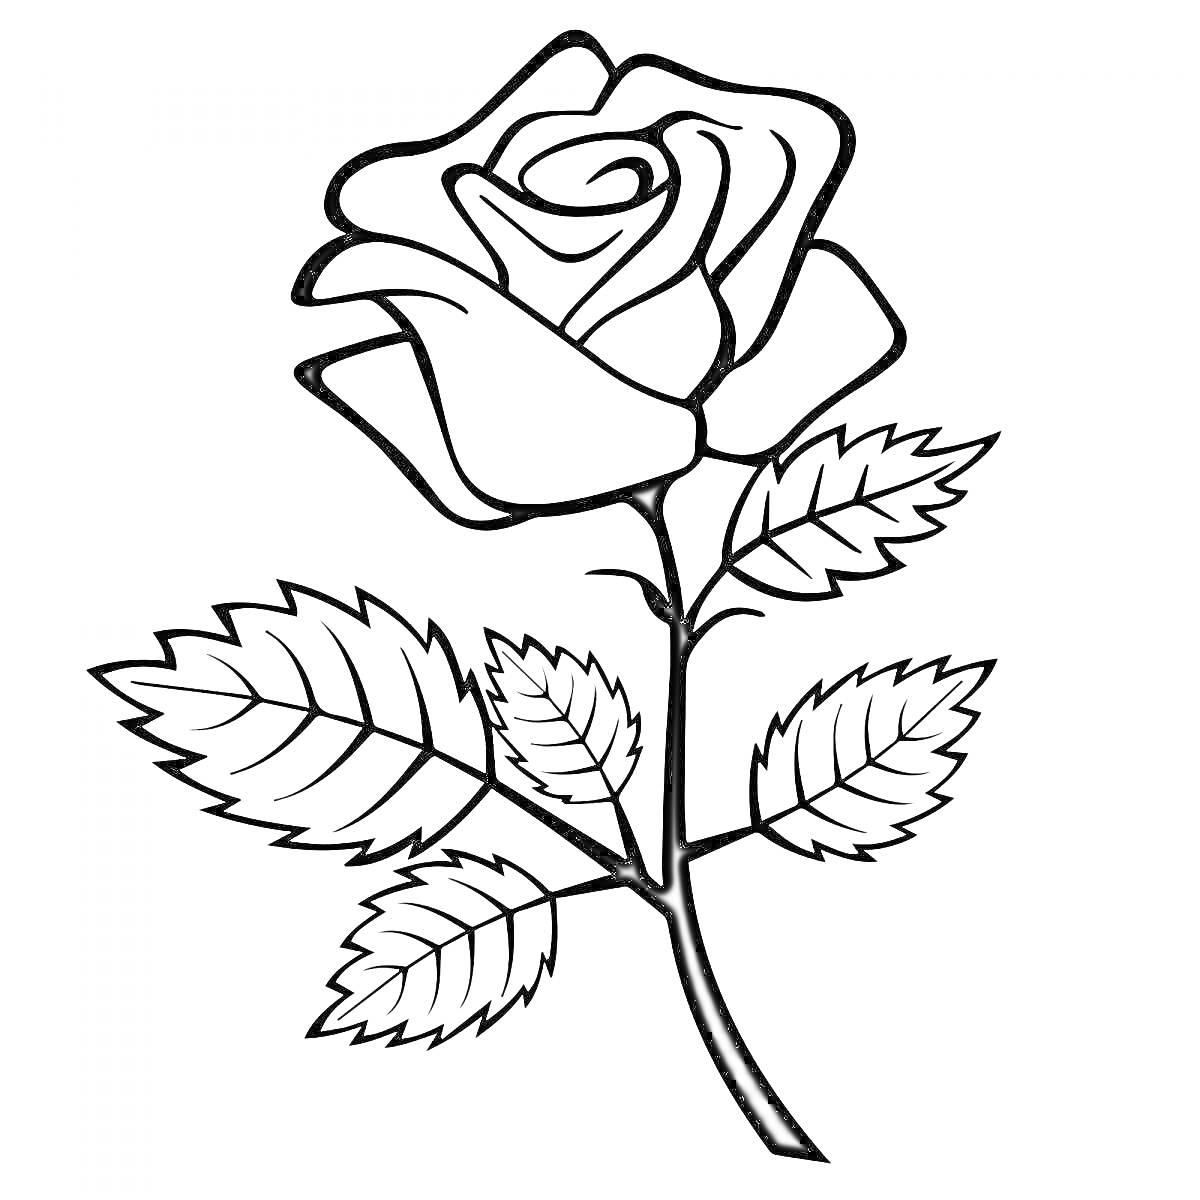 Раскраска Раскраска с изображением розы с листьями и стеблем